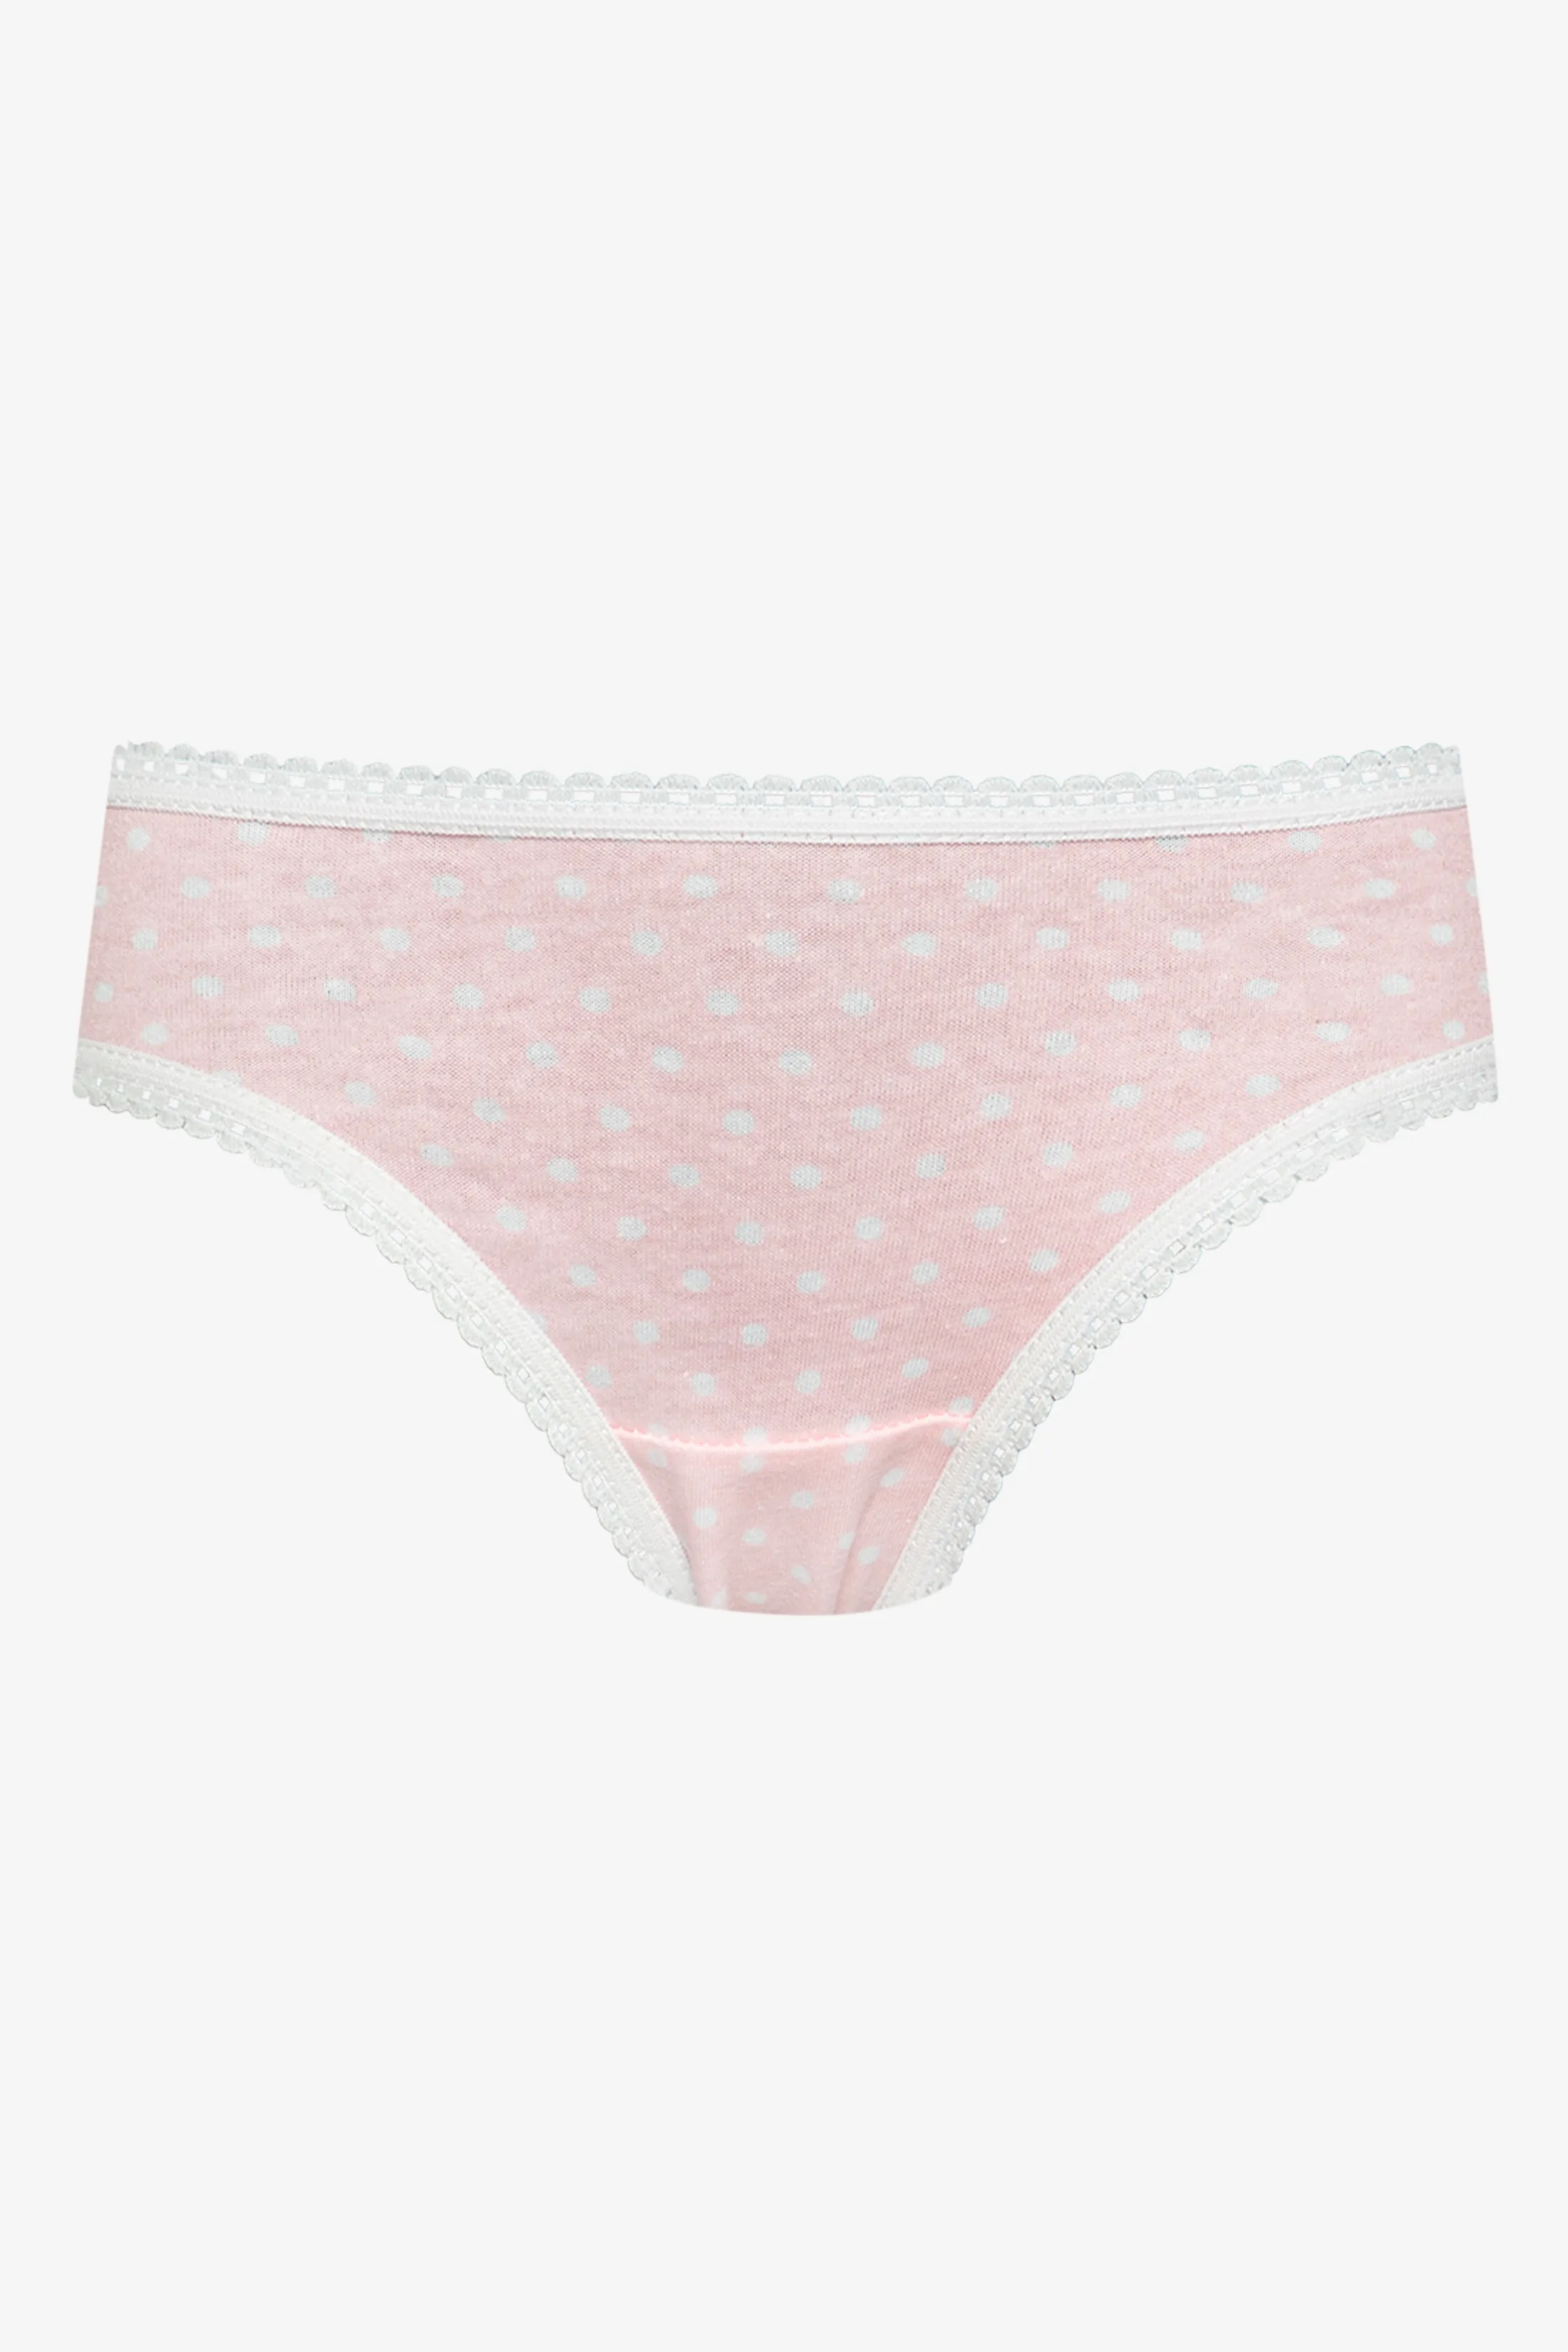 Girls 2-10 Years Underwear online at Ackermans